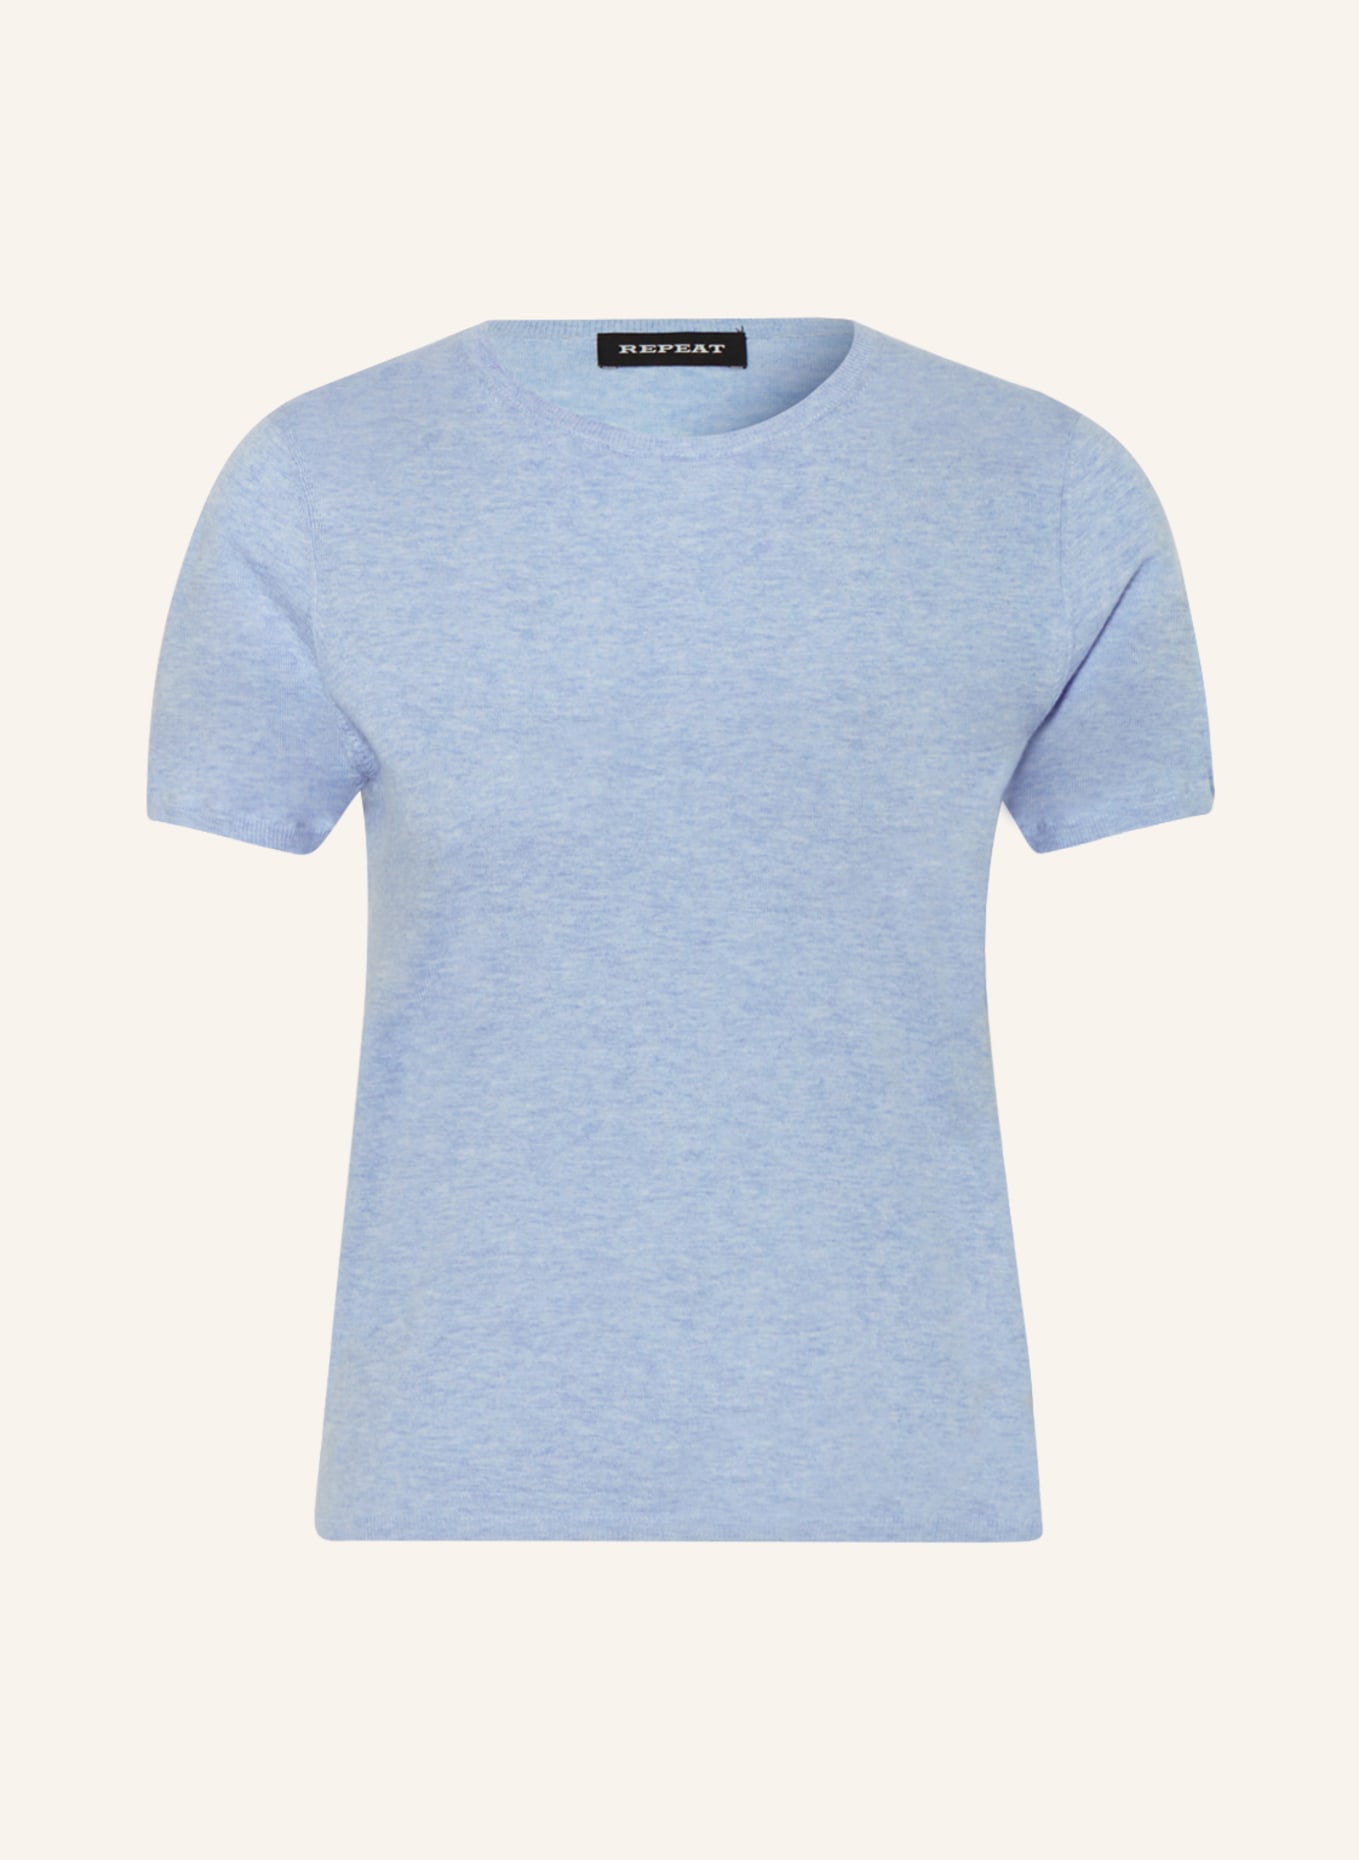 REPEAT Strickshirt, Farbe: HELLBLAU (Bild 1)